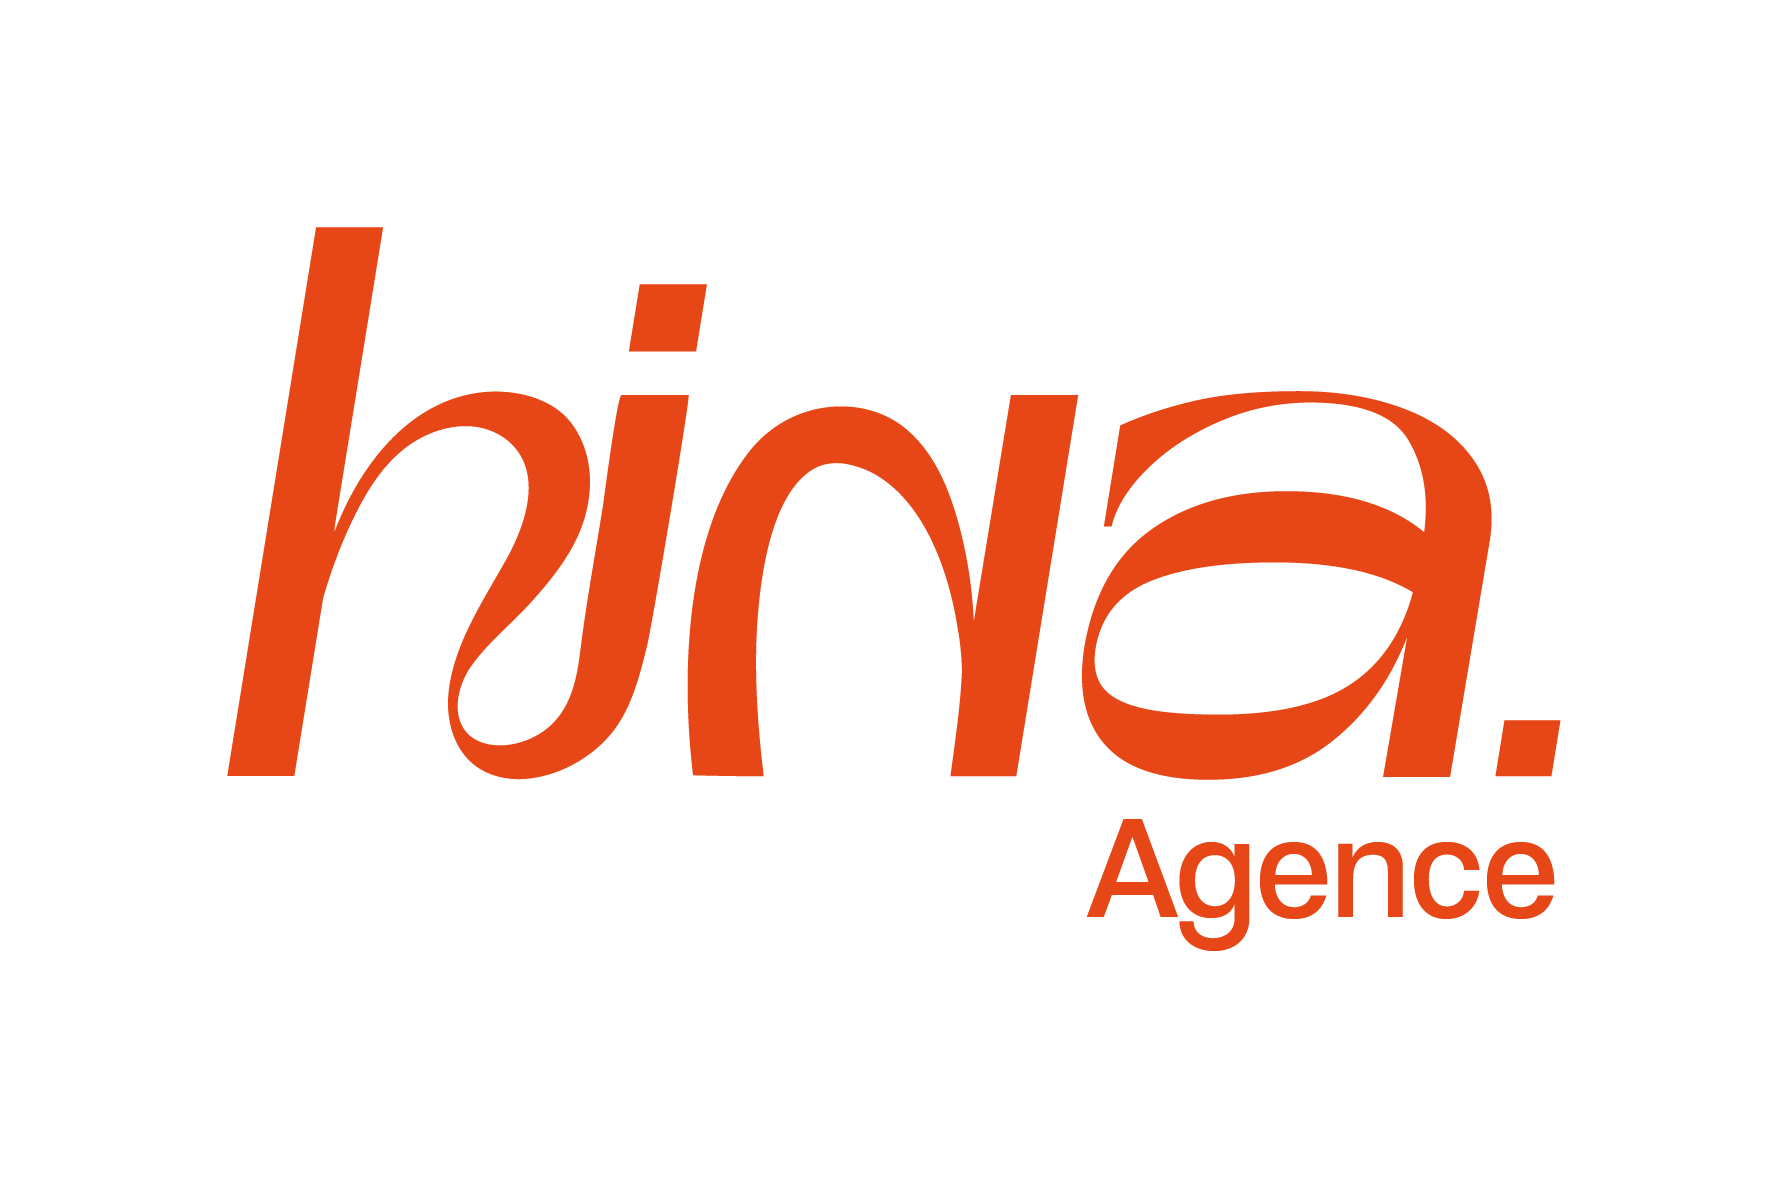 agence hina, agence de communication et évènementiel situé dans le sud de la france